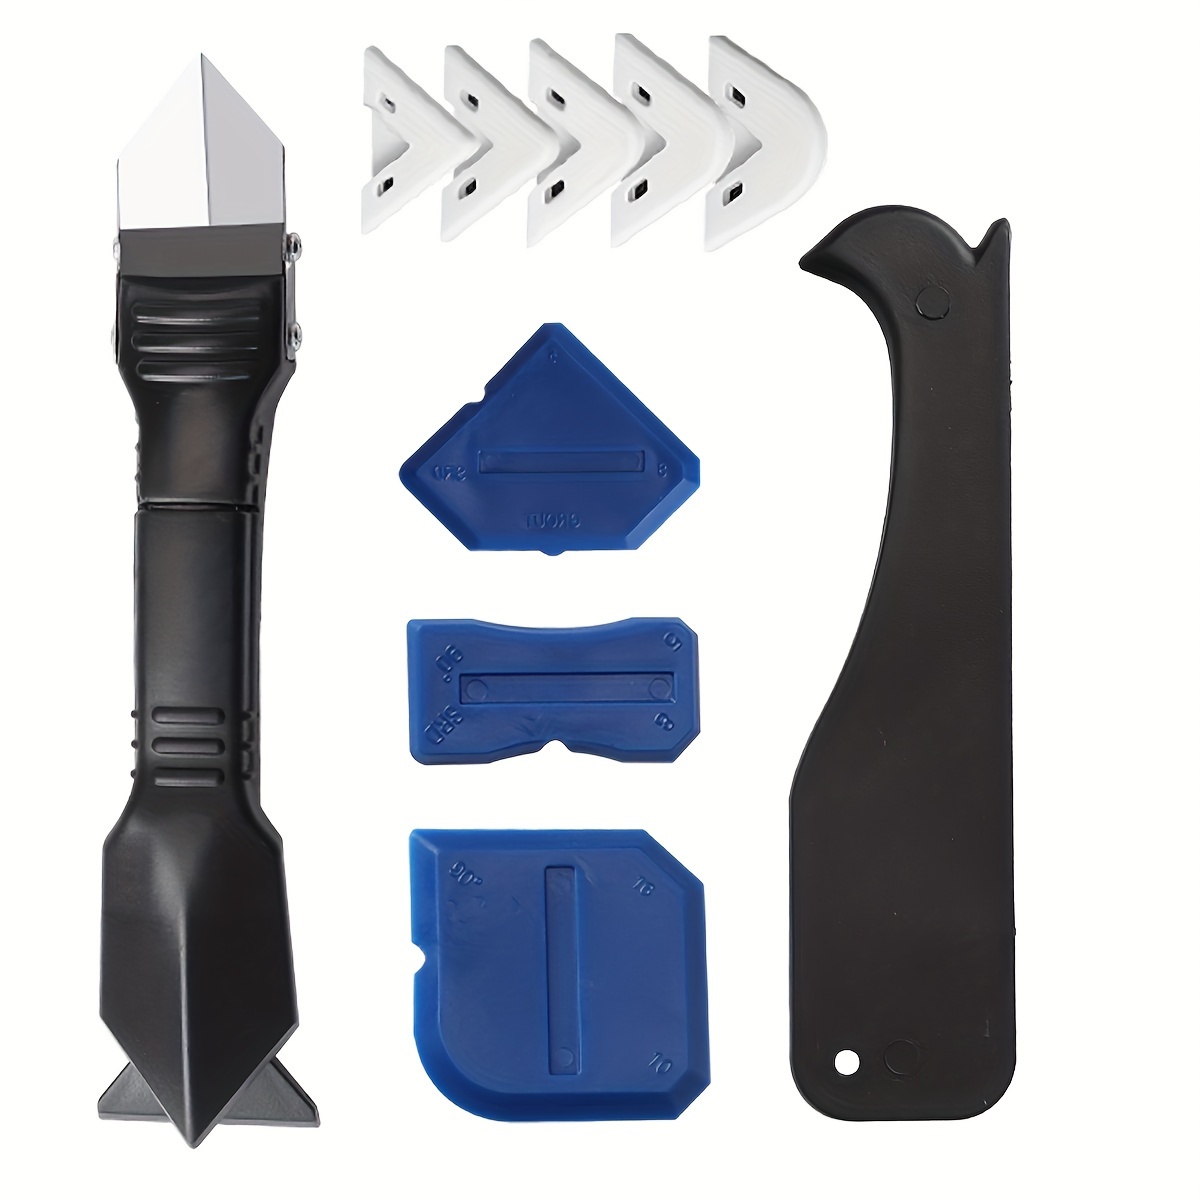 Outil de calfeutrage (Bleu)4 Pièces Kit 'outils De Calfeutrage Silicone  Mastic Dissolvant Pelle arts outil Bleu